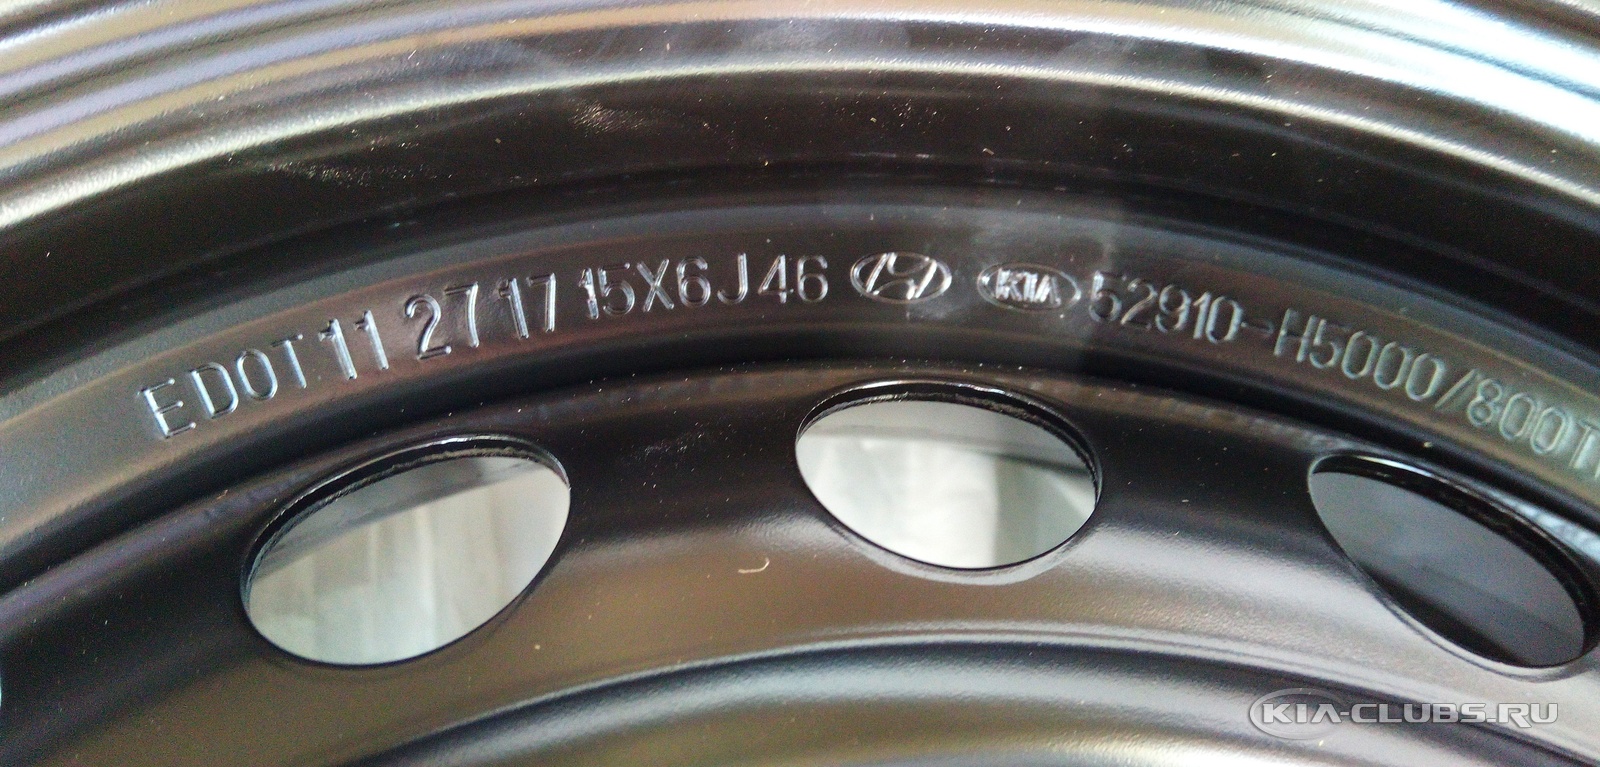 Диск авторизация. Штатные диски Киа к5. Размеры диска запасного колеса Дайхатсу Бун 2018. Заржавел диск у запаски в машине.